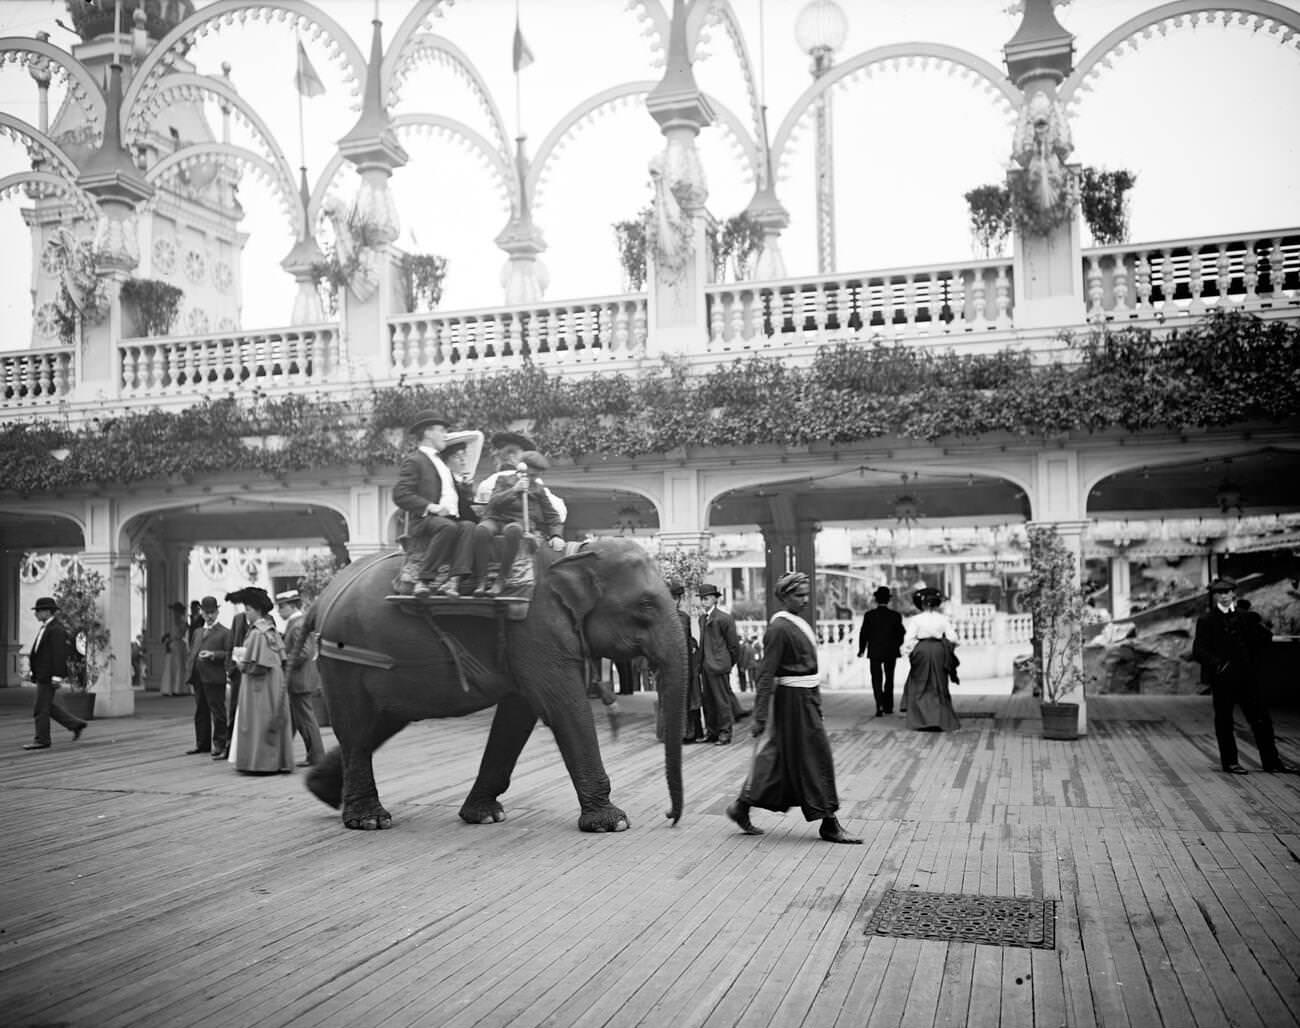 Elephant Ride At Luna Park, Coney Island, Brooklyn, 1905